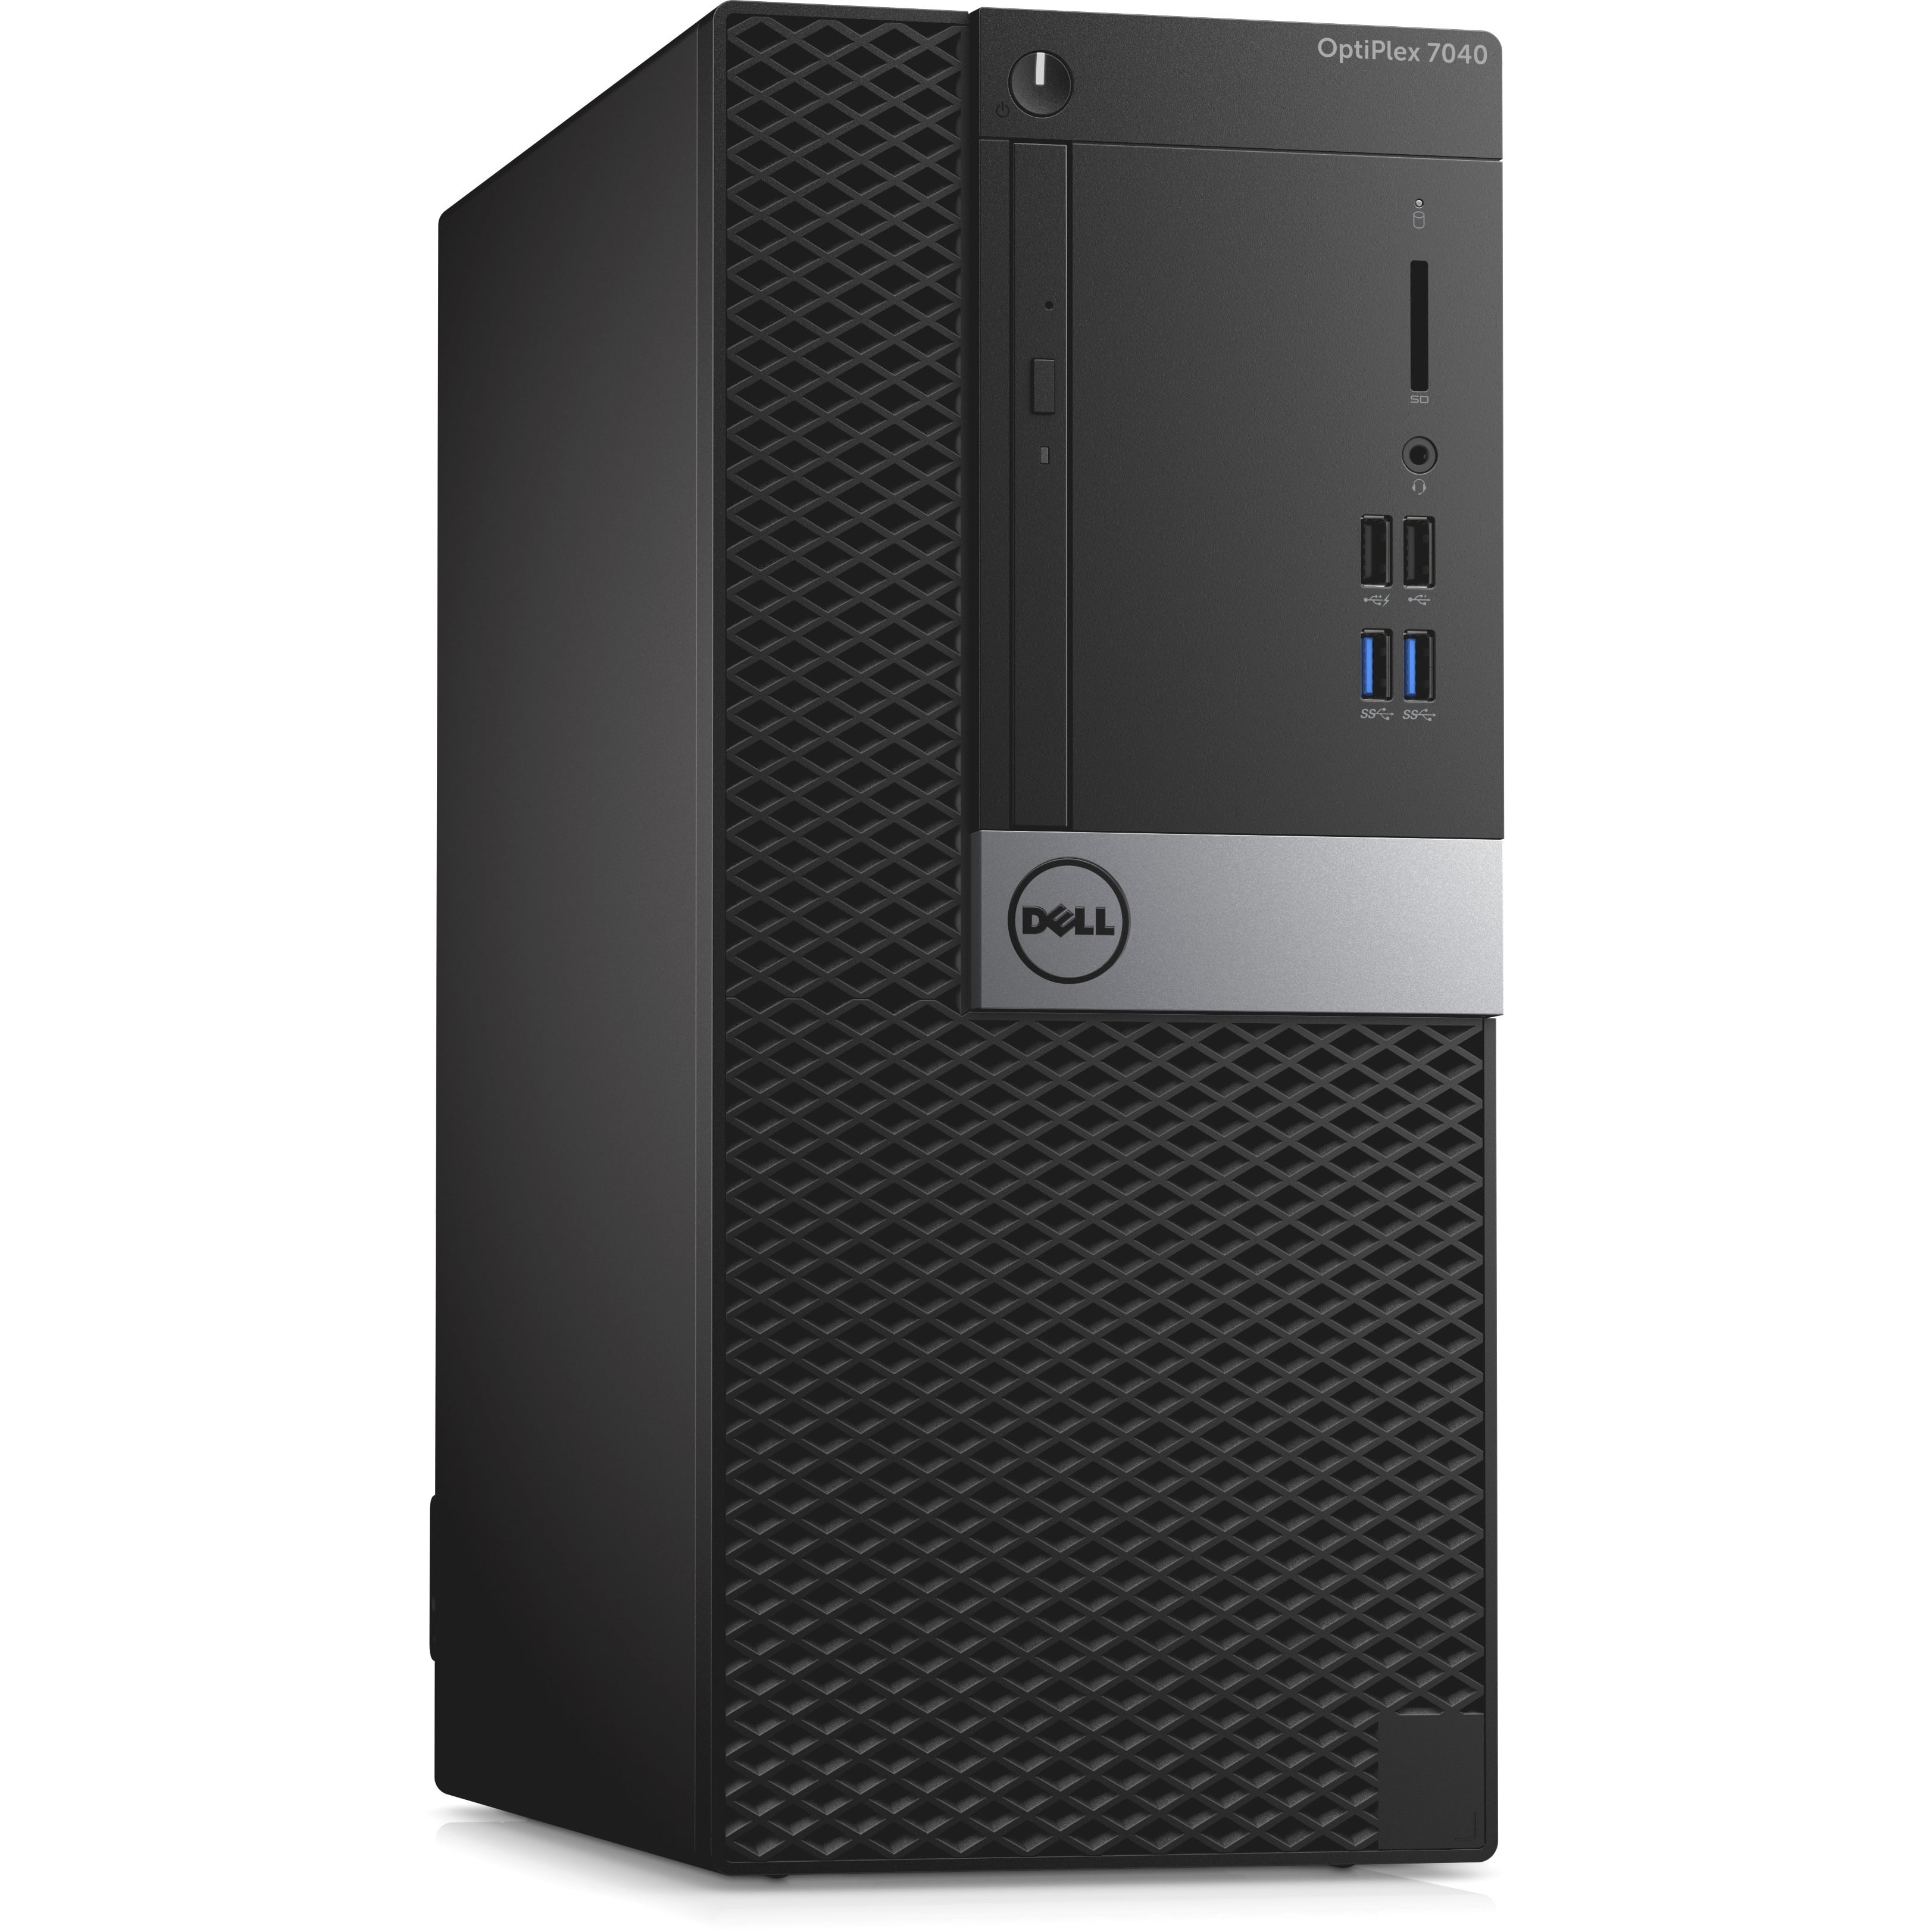 Dell OptiPlex Desktop Tower Computer, Intel Core i5 i5-6500, 8GB